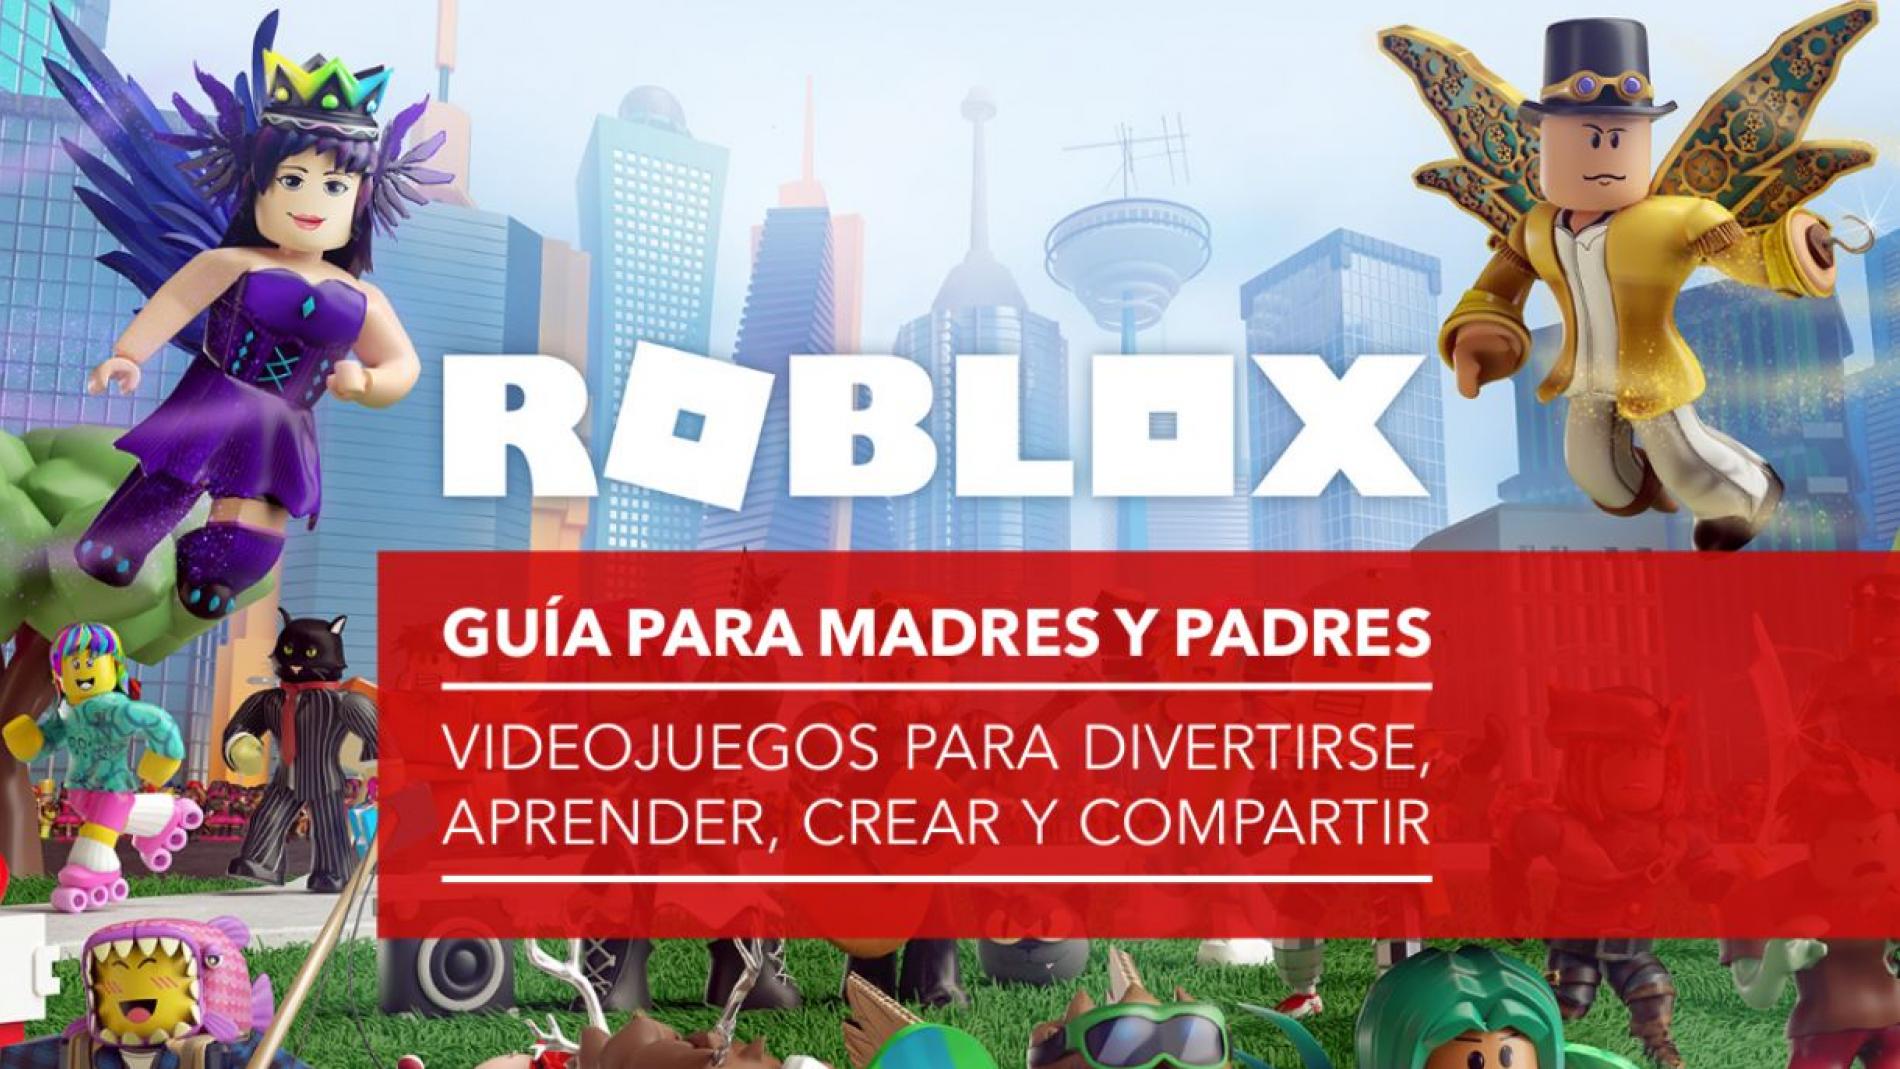 Guía completa del videojuego Roblox para madres y padres